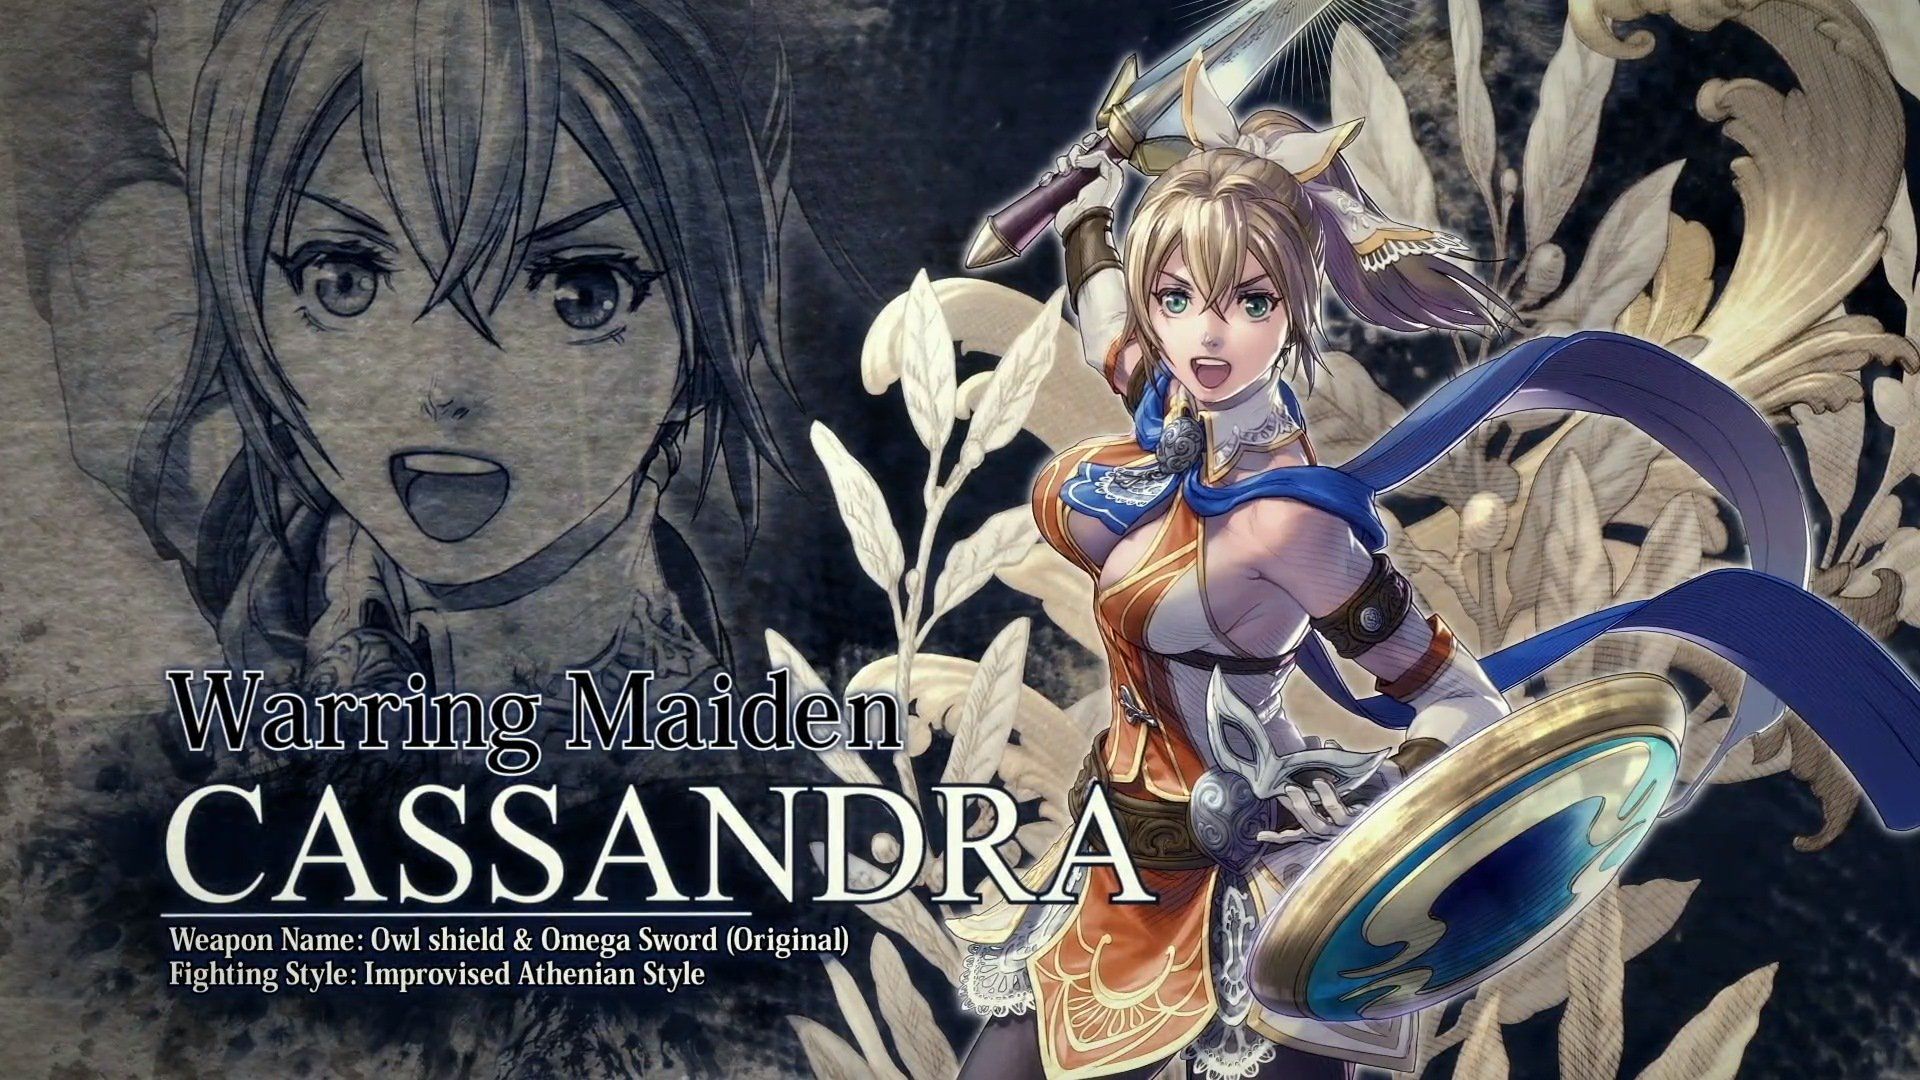 Cassandra llegará a Soulcalibur 6 como personaje DLC